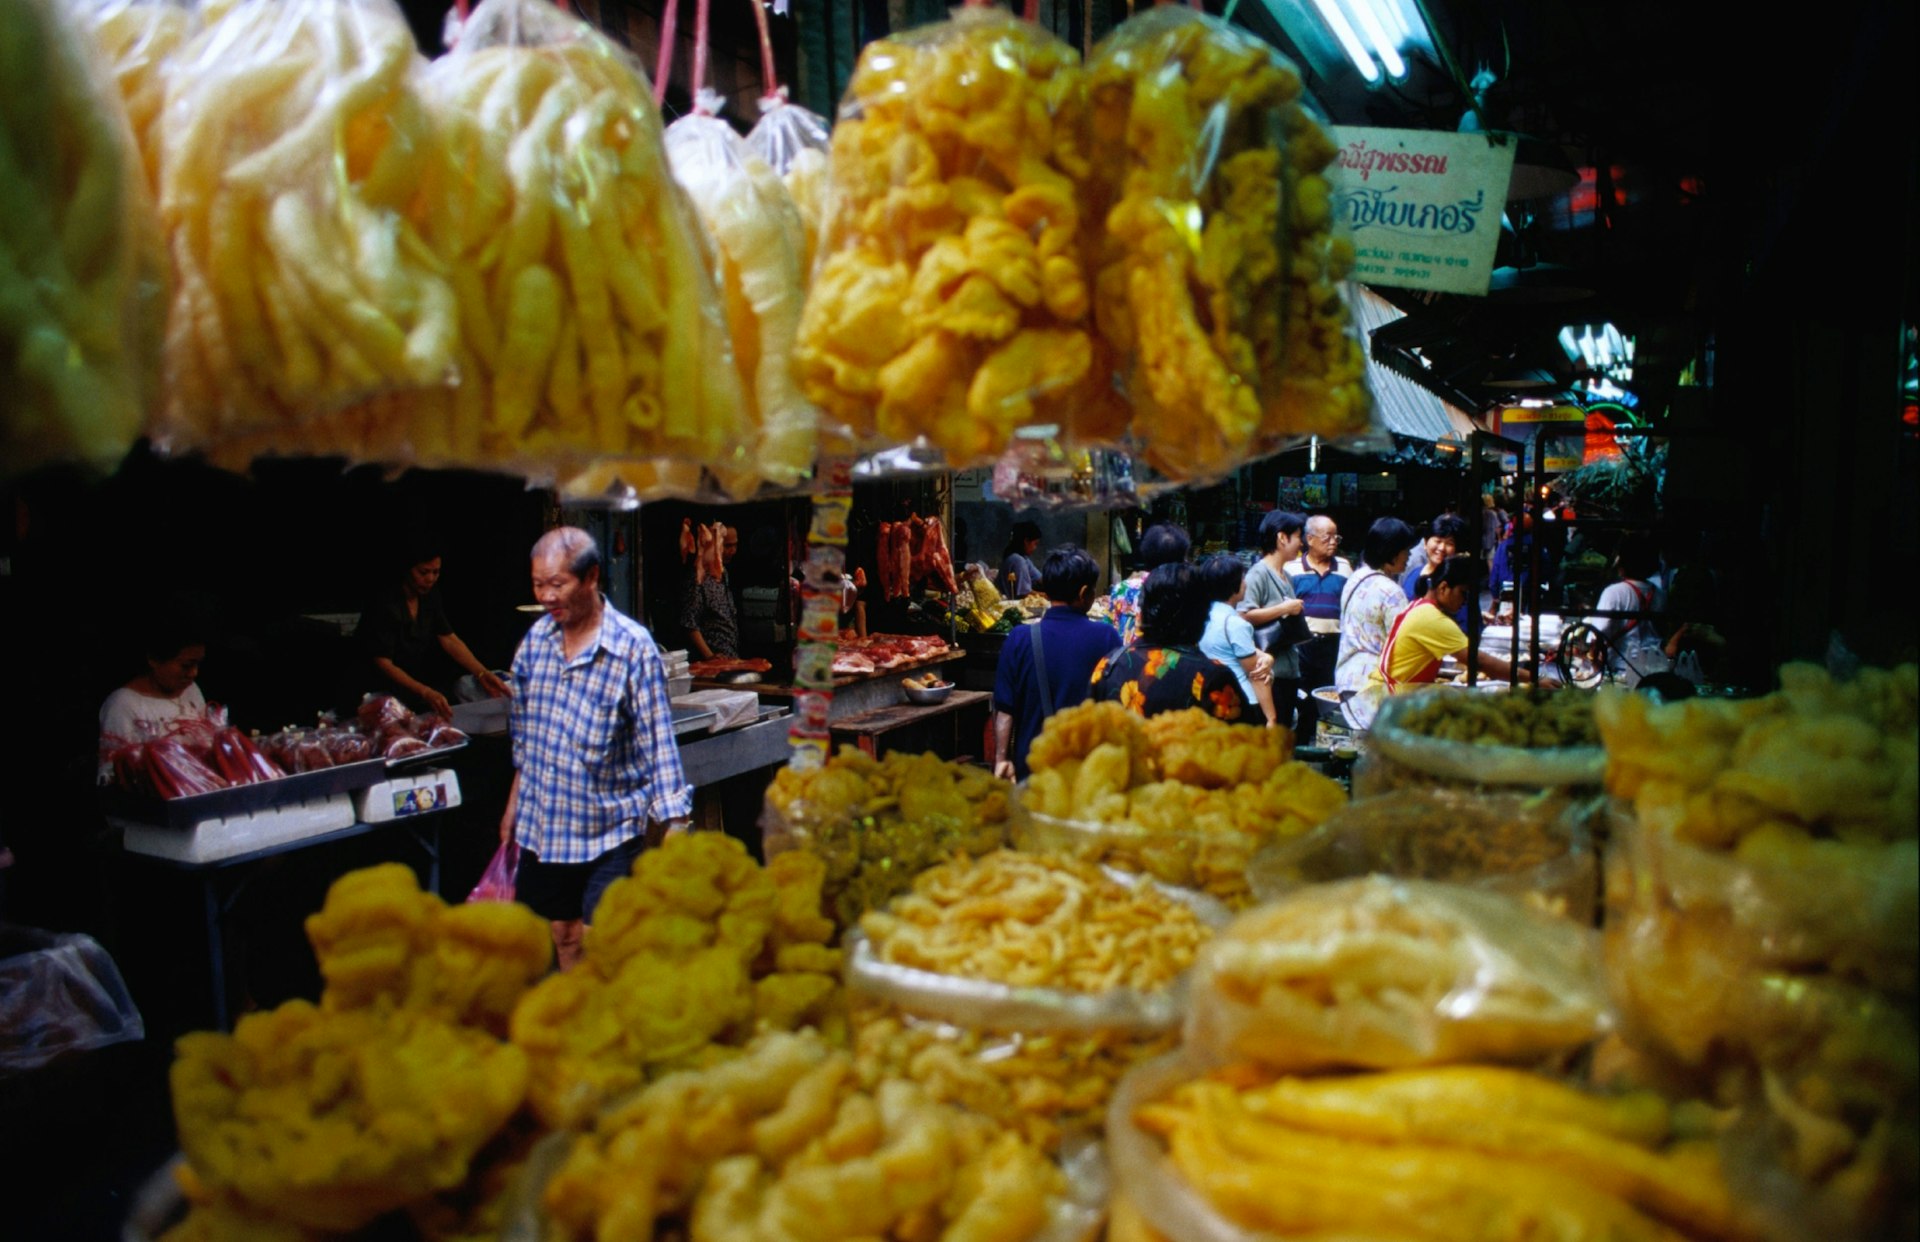 Food stalls on Trok Itsaranuphap (soi 16) in Bangkok's Chinatown.